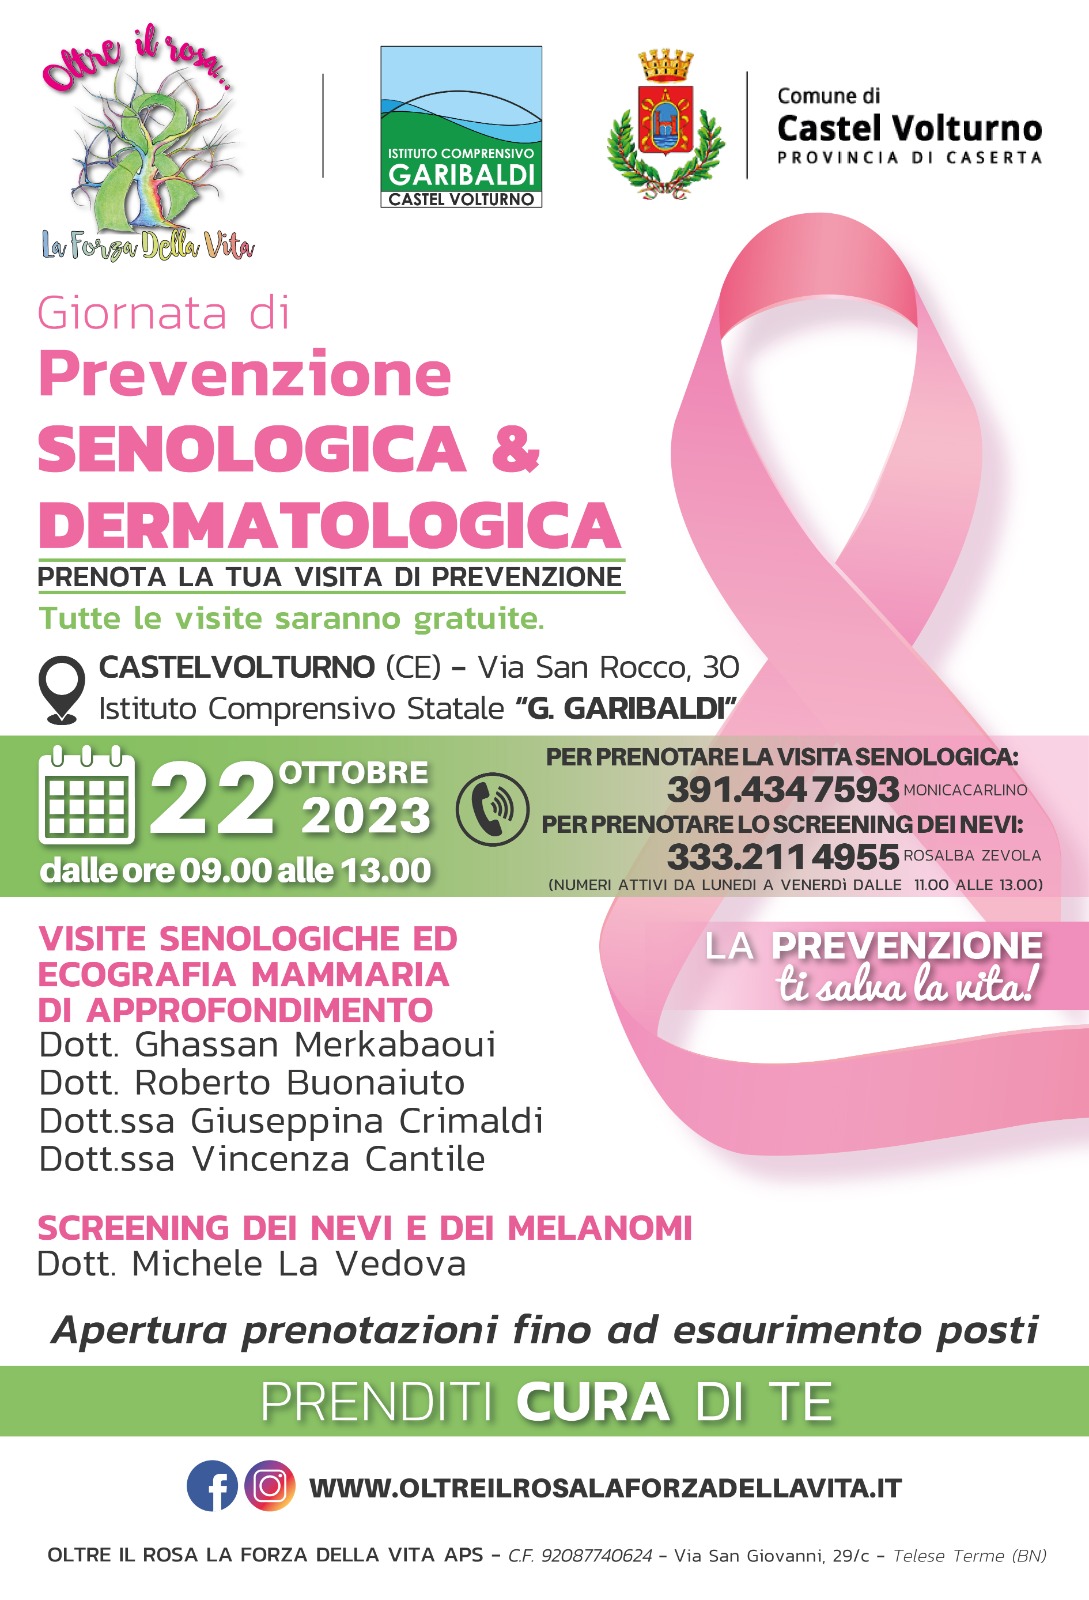 Locandina della giornata di prevenzione senologica e dermatologica a Castel Volturno, del 22 ottobre 2023, presso i locali dell'Istituto Comprensivo Statale G. Garibaldi in via San Rocco 30